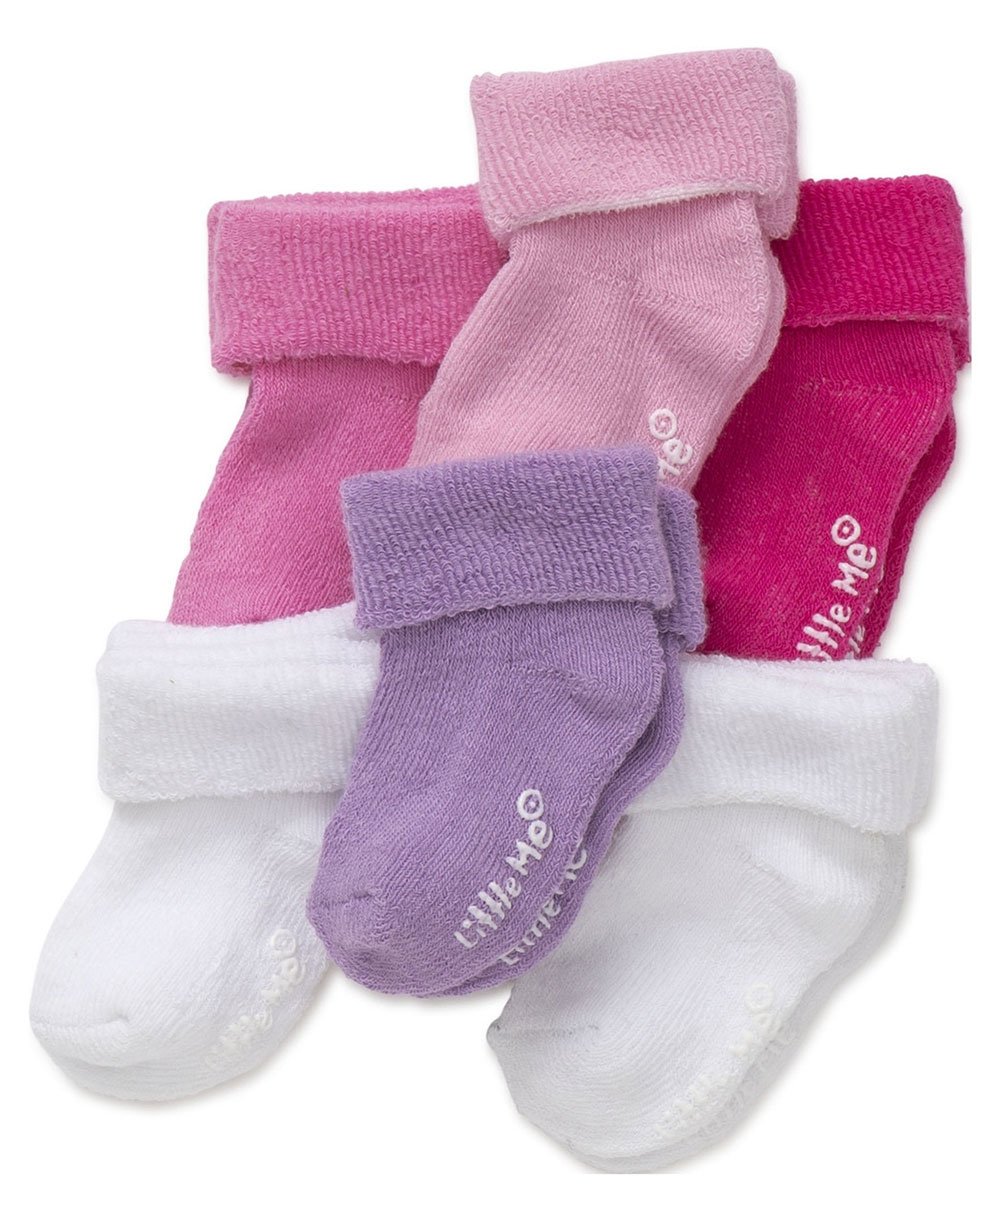 Little Me baby-girls 6 Pack Variety Socks